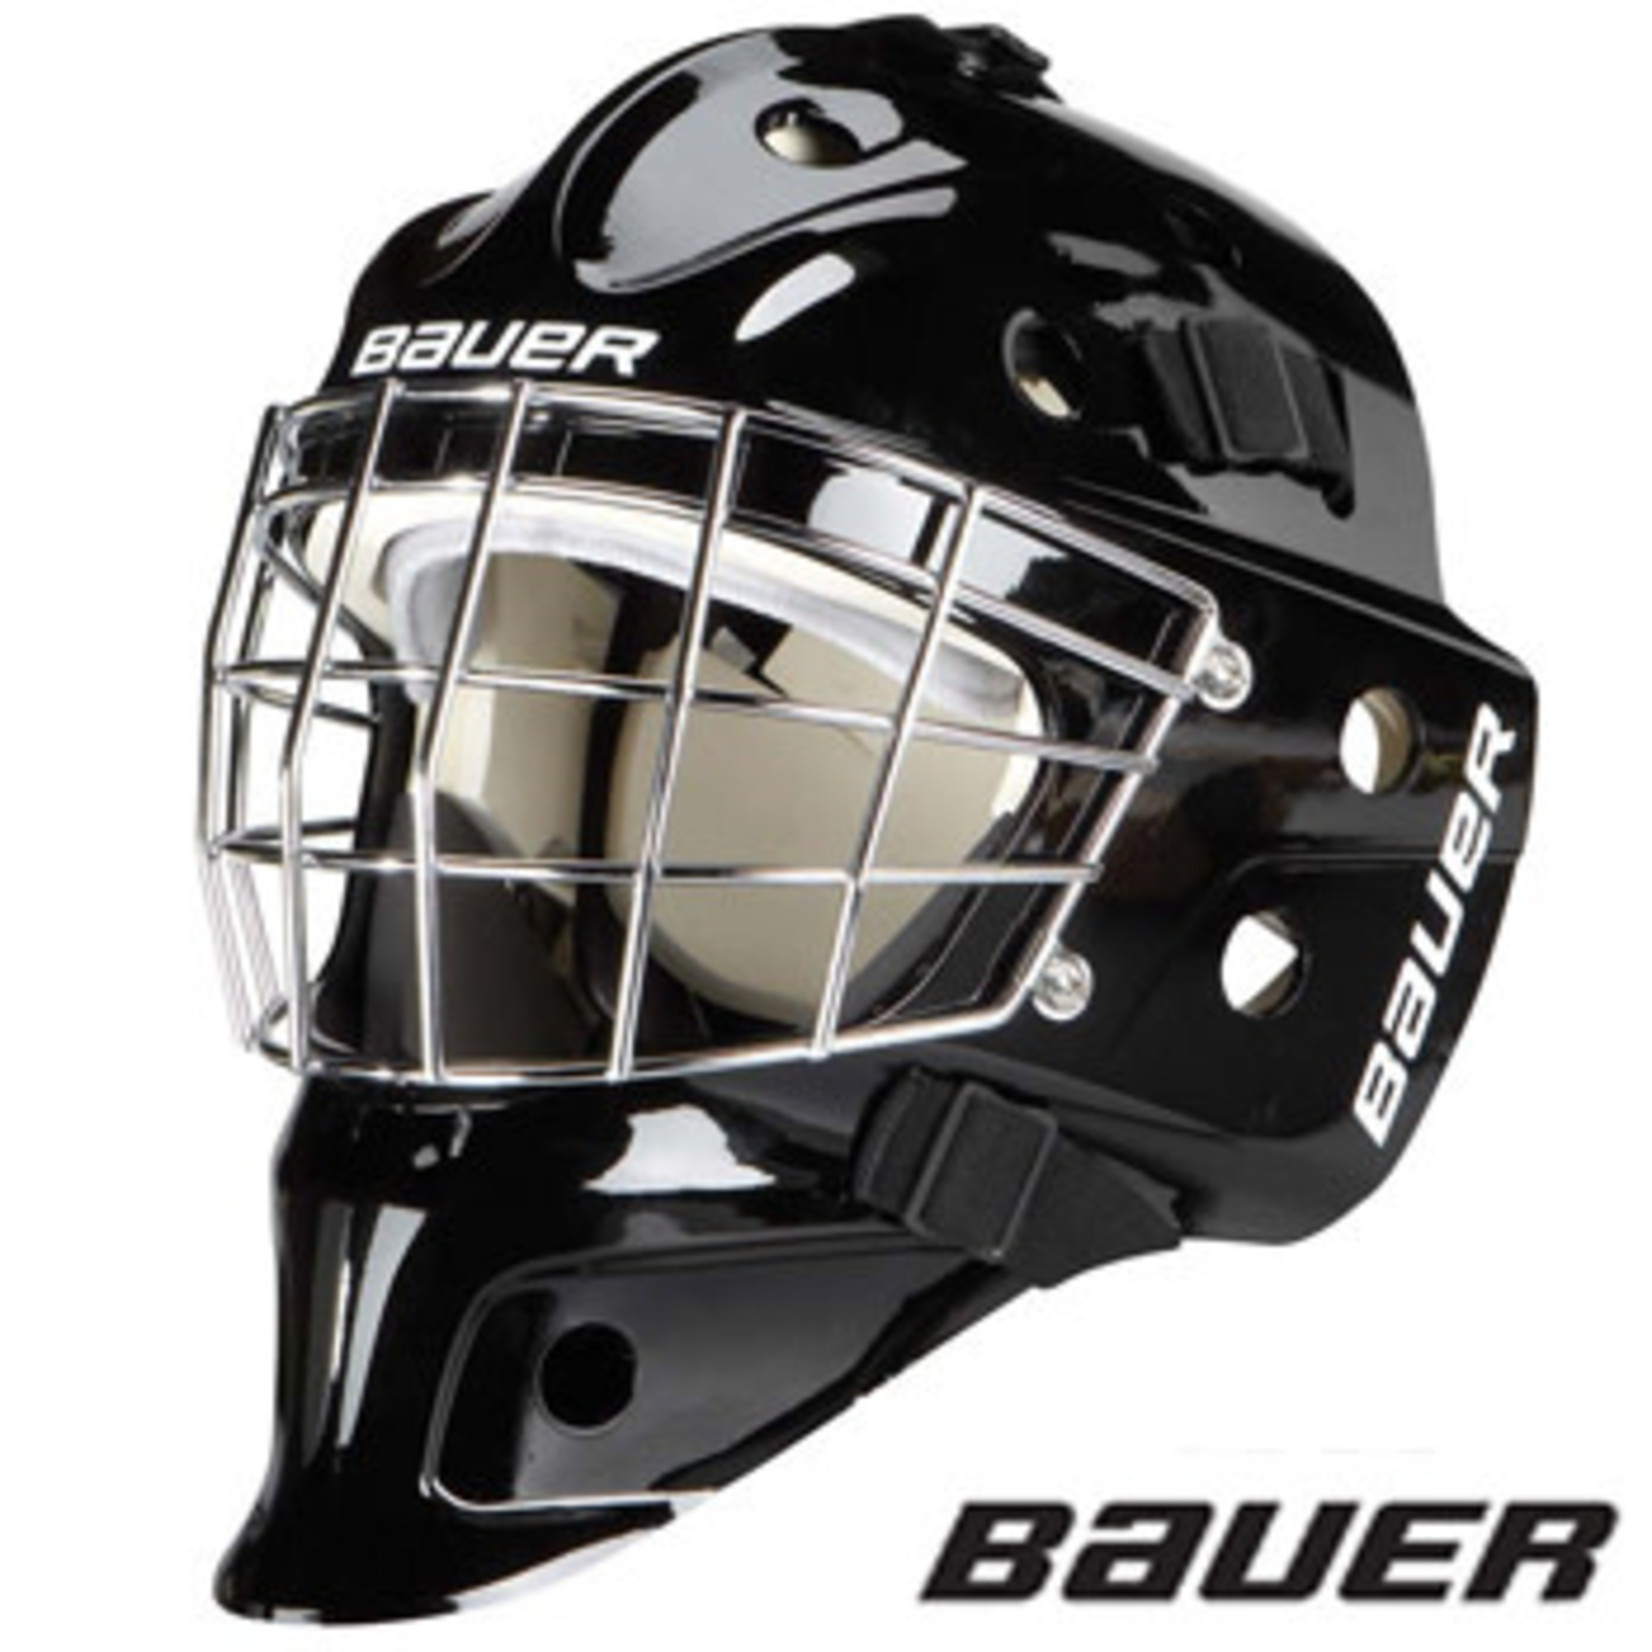 Bauer NME 3 Goalie Mask SR 22"-2.4" (7-7 1/2)